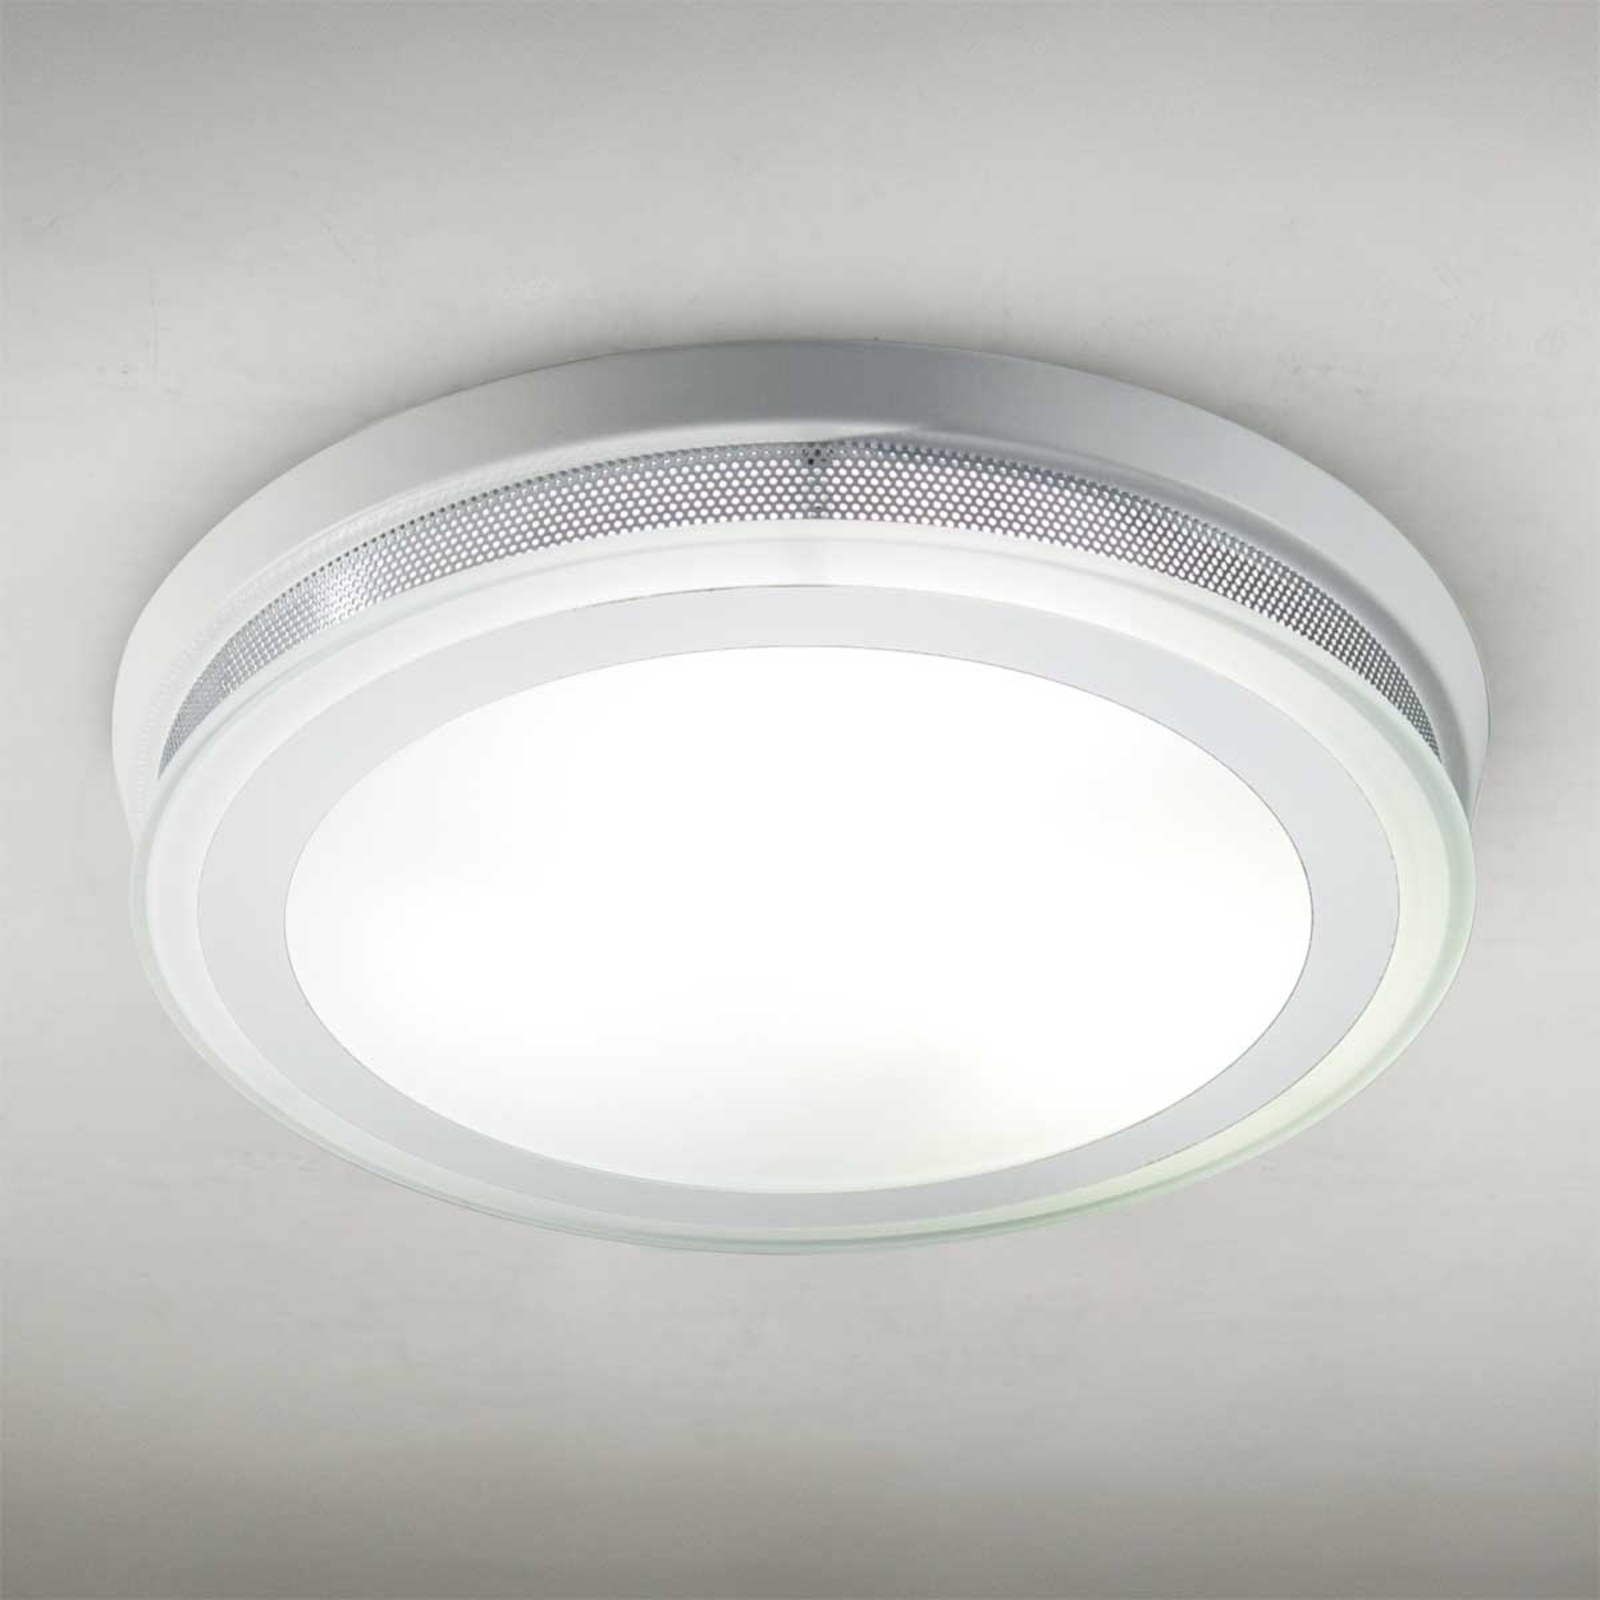 Round ceiling light RING 9115 37 cm white